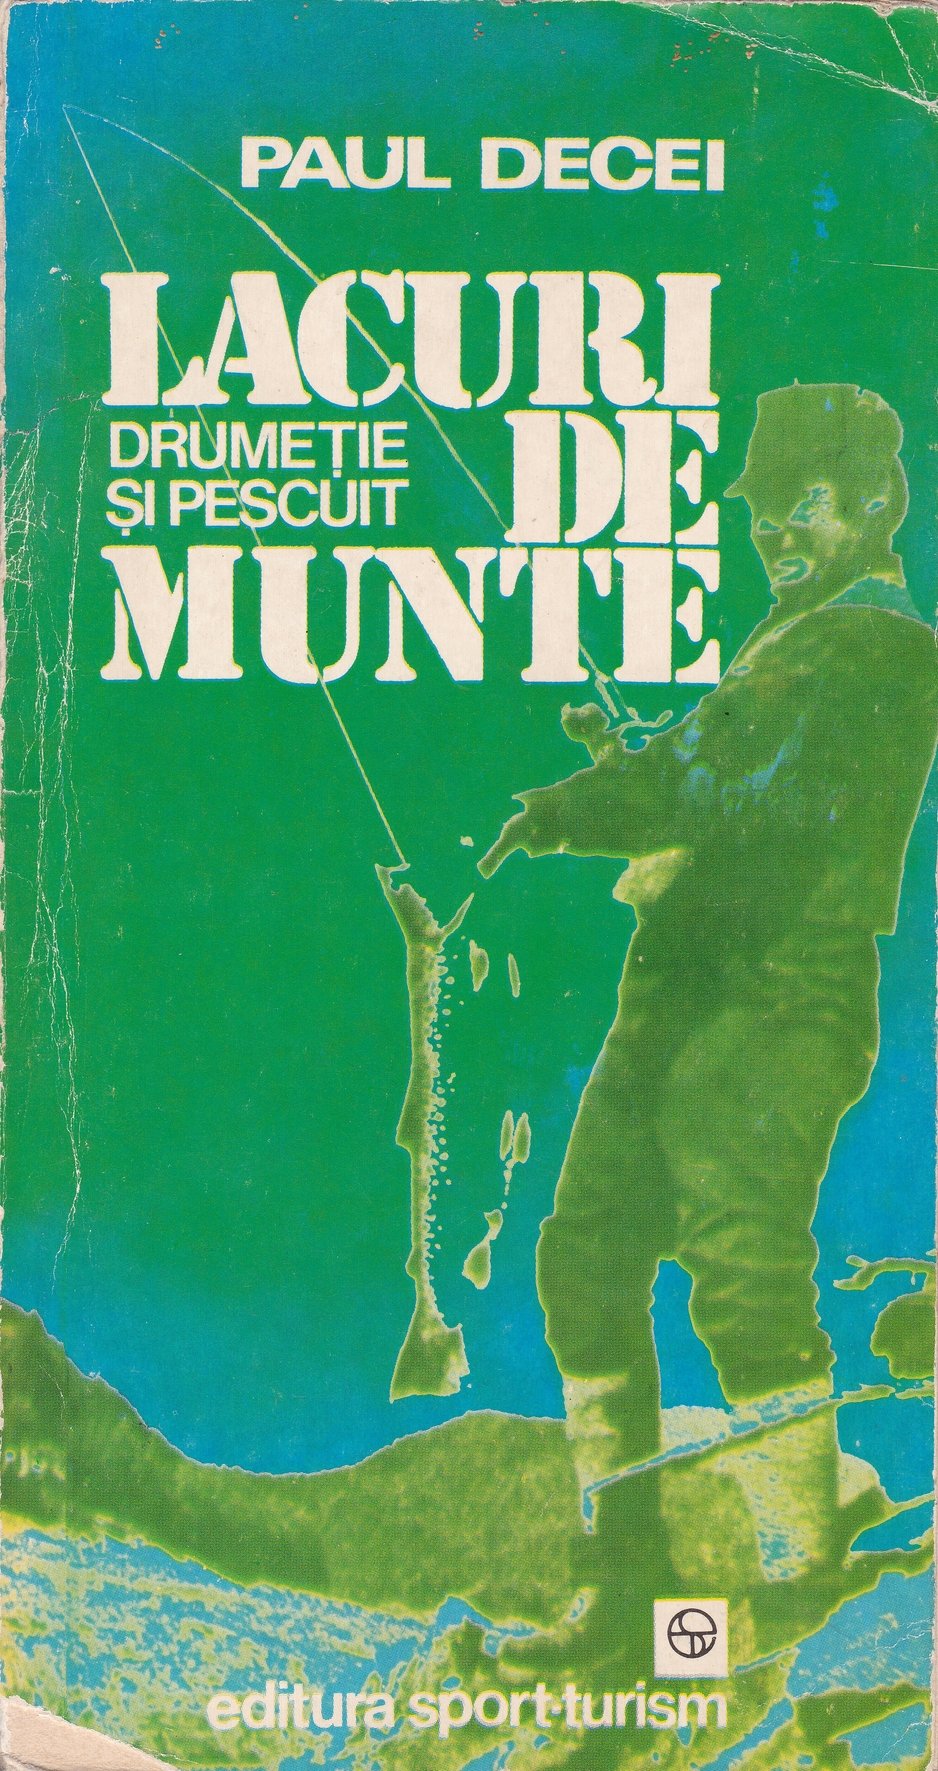 Paul Decei: Lacuri de munte. Drumetie si pescuit (Rippl-Rónai Múzeum CC BY-NC-ND)